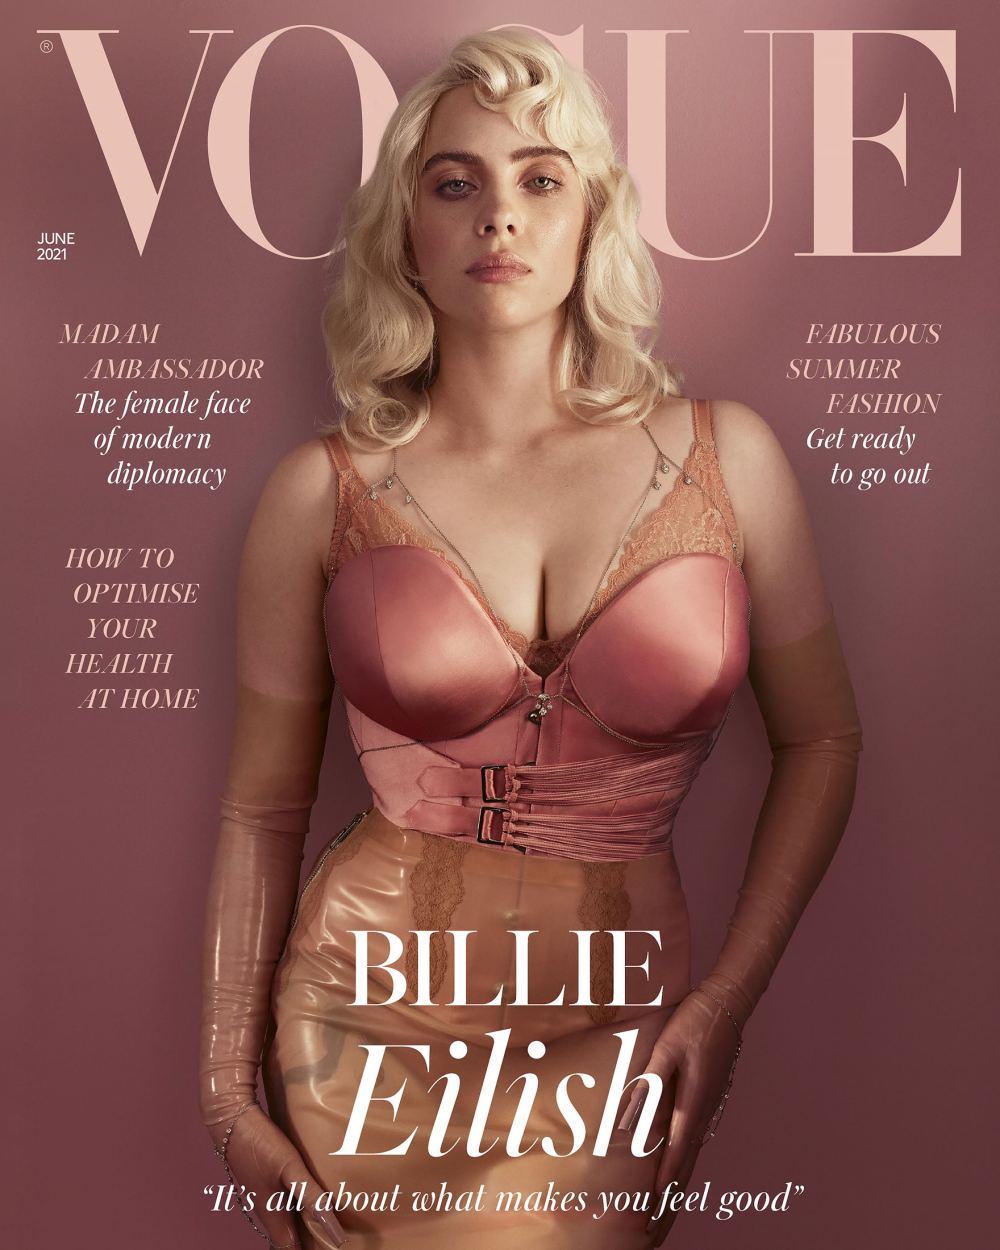 Billie Eilish Wears $81,775 Worth of Diamonds on British ‘Vogue’ Cover